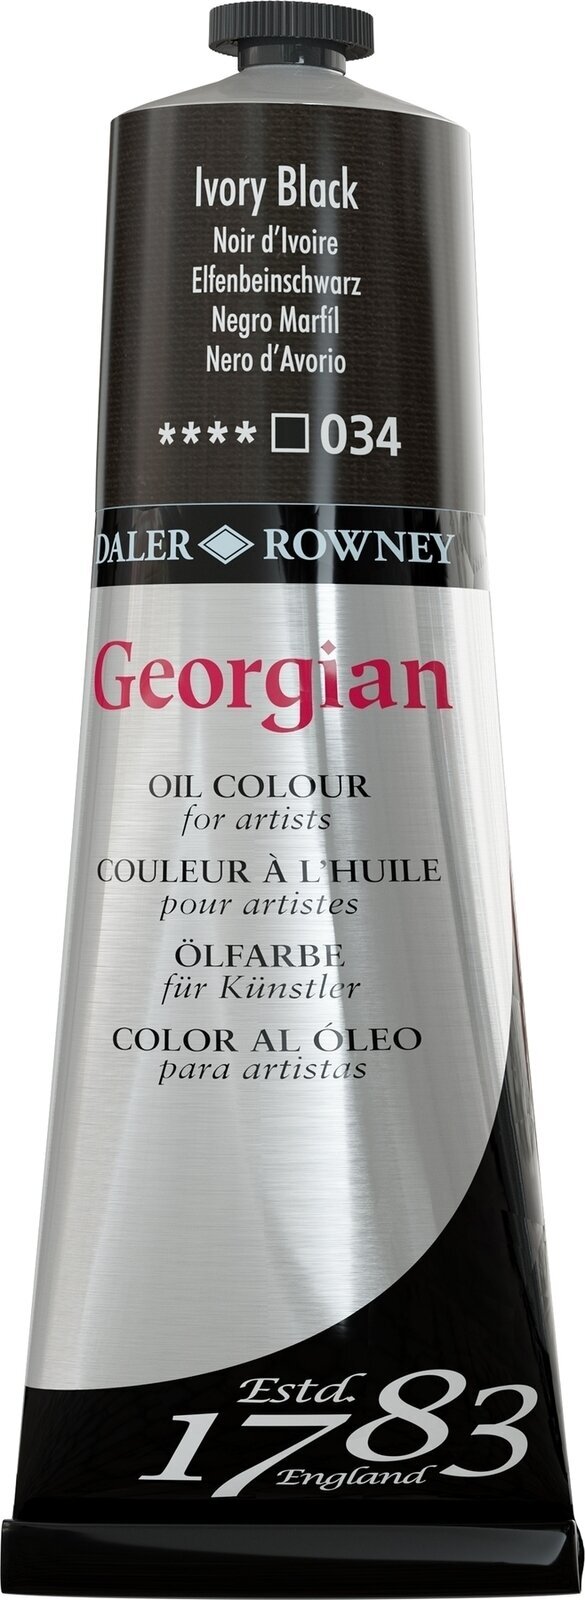 Aceite de colores Daler Rowney Georgian Oil Paint Ivory Black 225 ml 1 pc